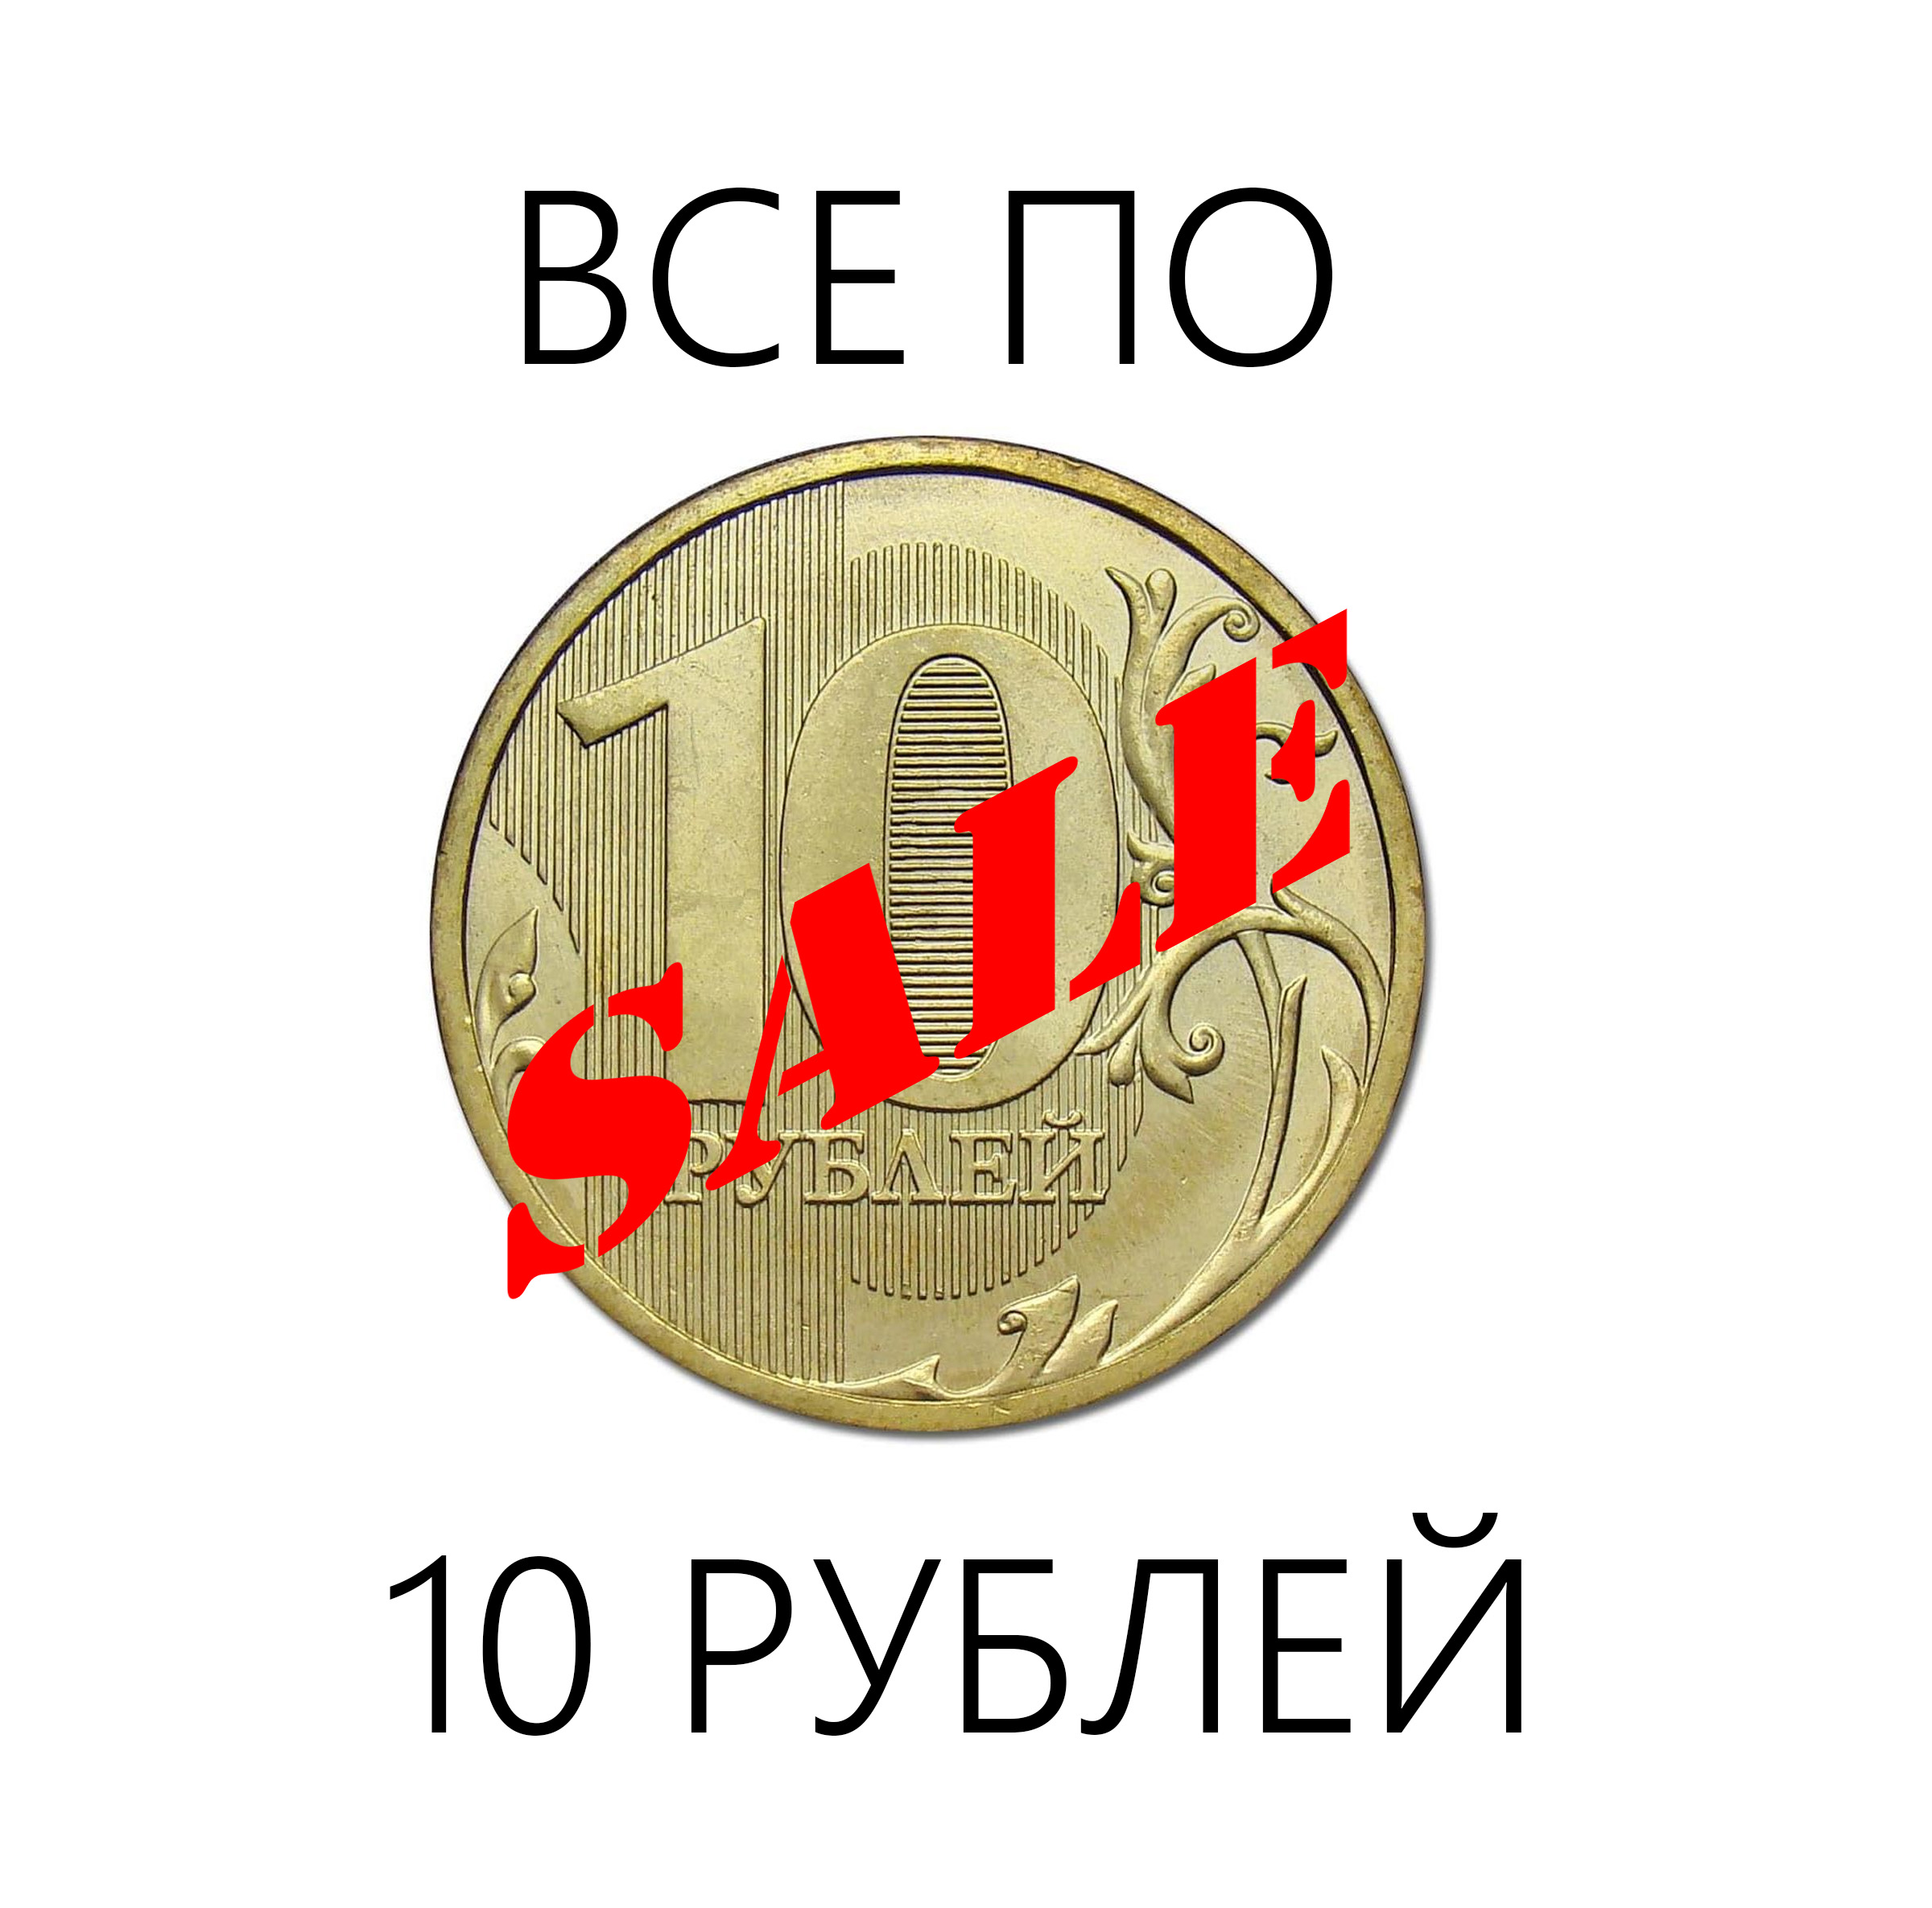 Распродажа товаров по 10 рублей